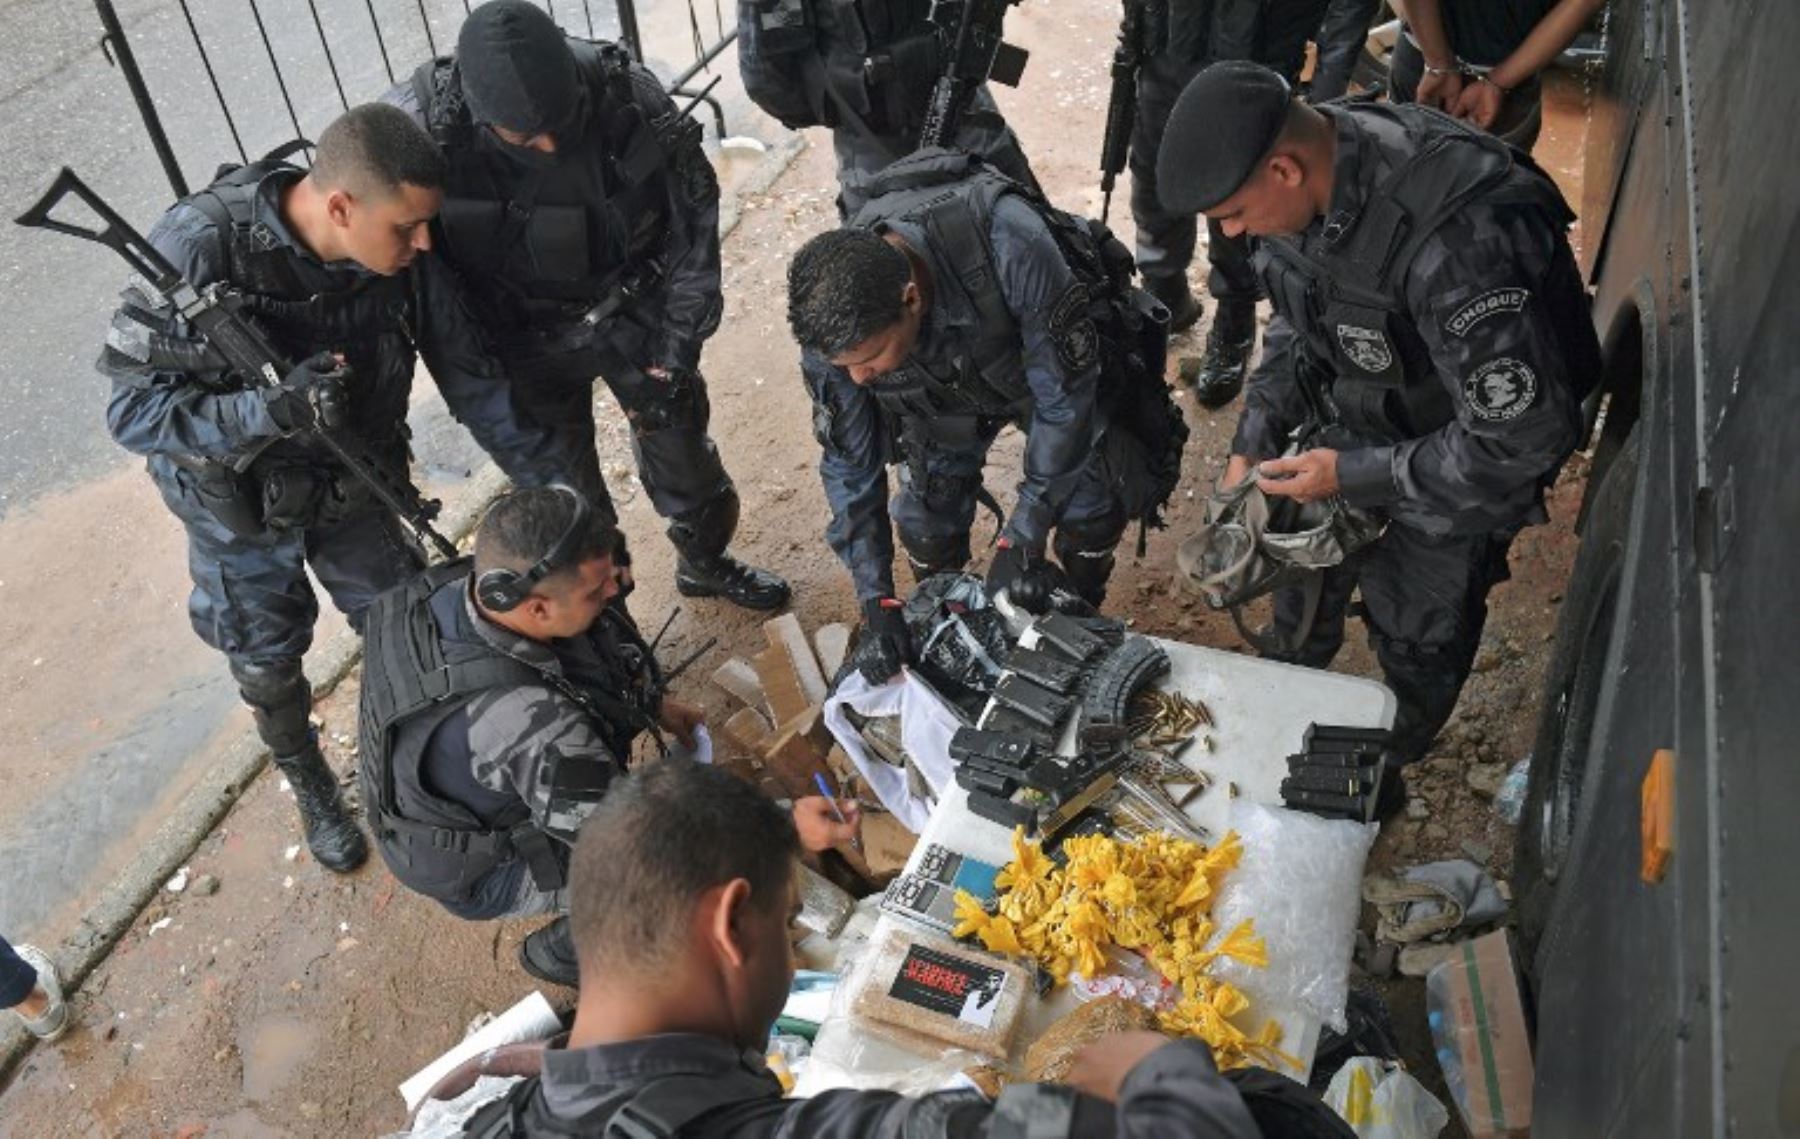 Fuerzas especiales de la policía militar inspeccionan drogas incautadas, armas y municiones, en la favela de Vila Kennedy en Río de Janeiro.Foto:AFP